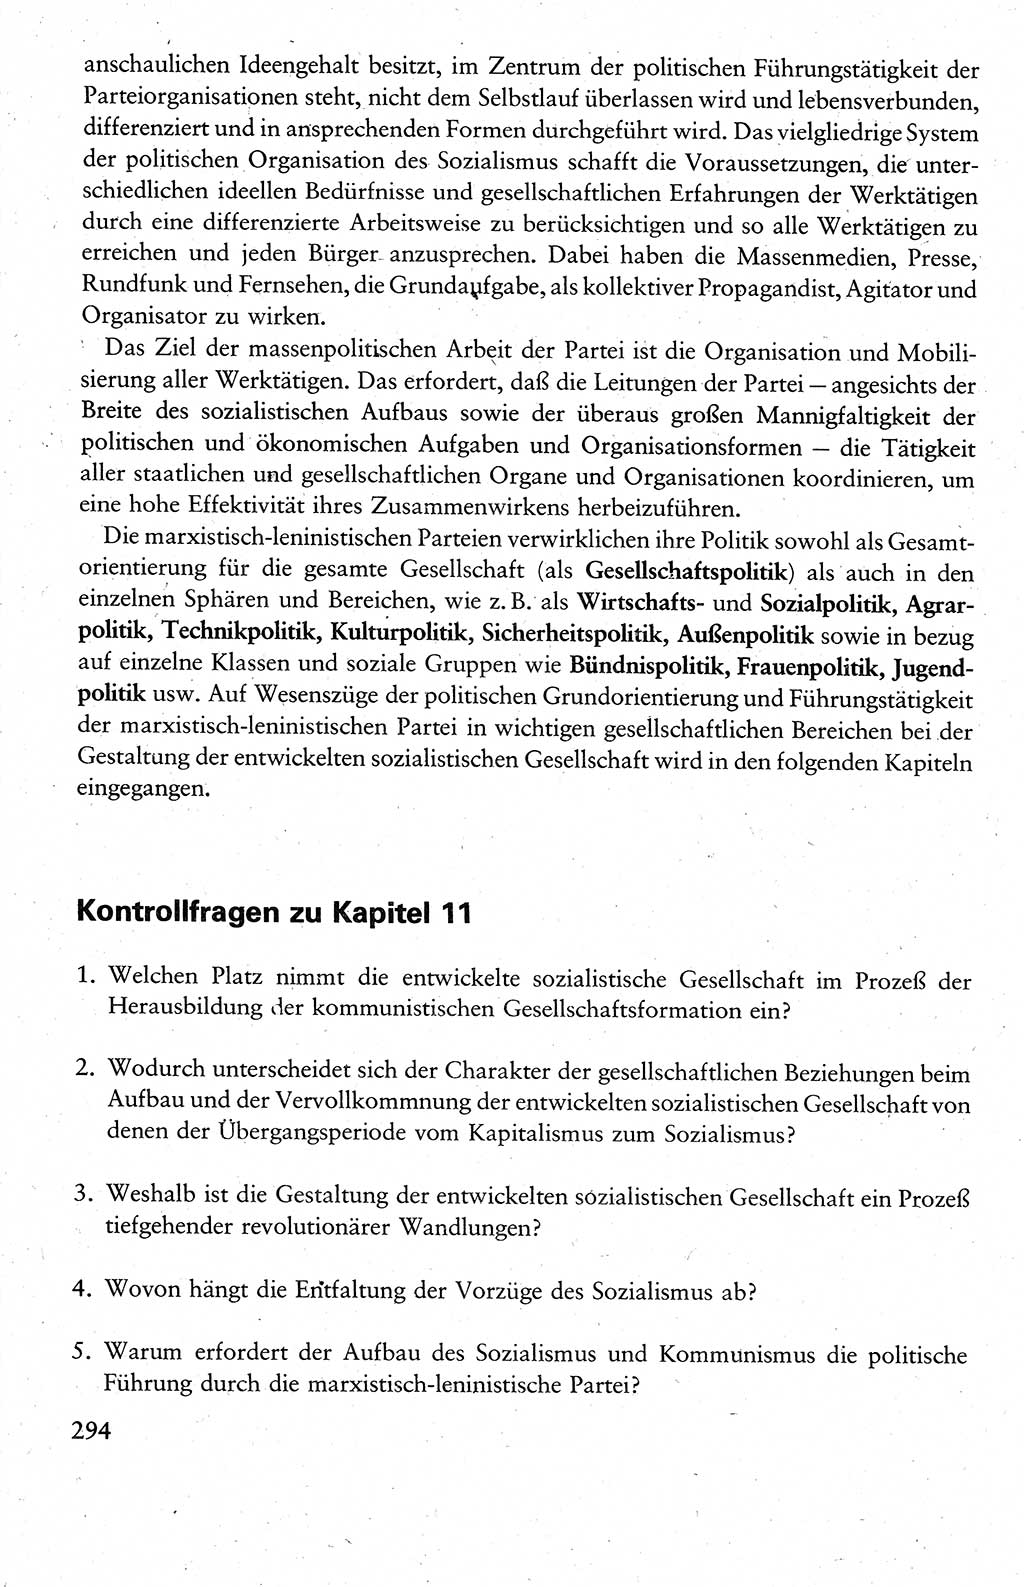 Wissenschaftlicher Kommunismus [Deutsche Demokratische Republik (DDR)], Lehrbuch für das marxistisch-leninistische Grundlagenstudium 1983, Seite 294 (Wiss. Komm. DDR Lb. 1983, S. 294)